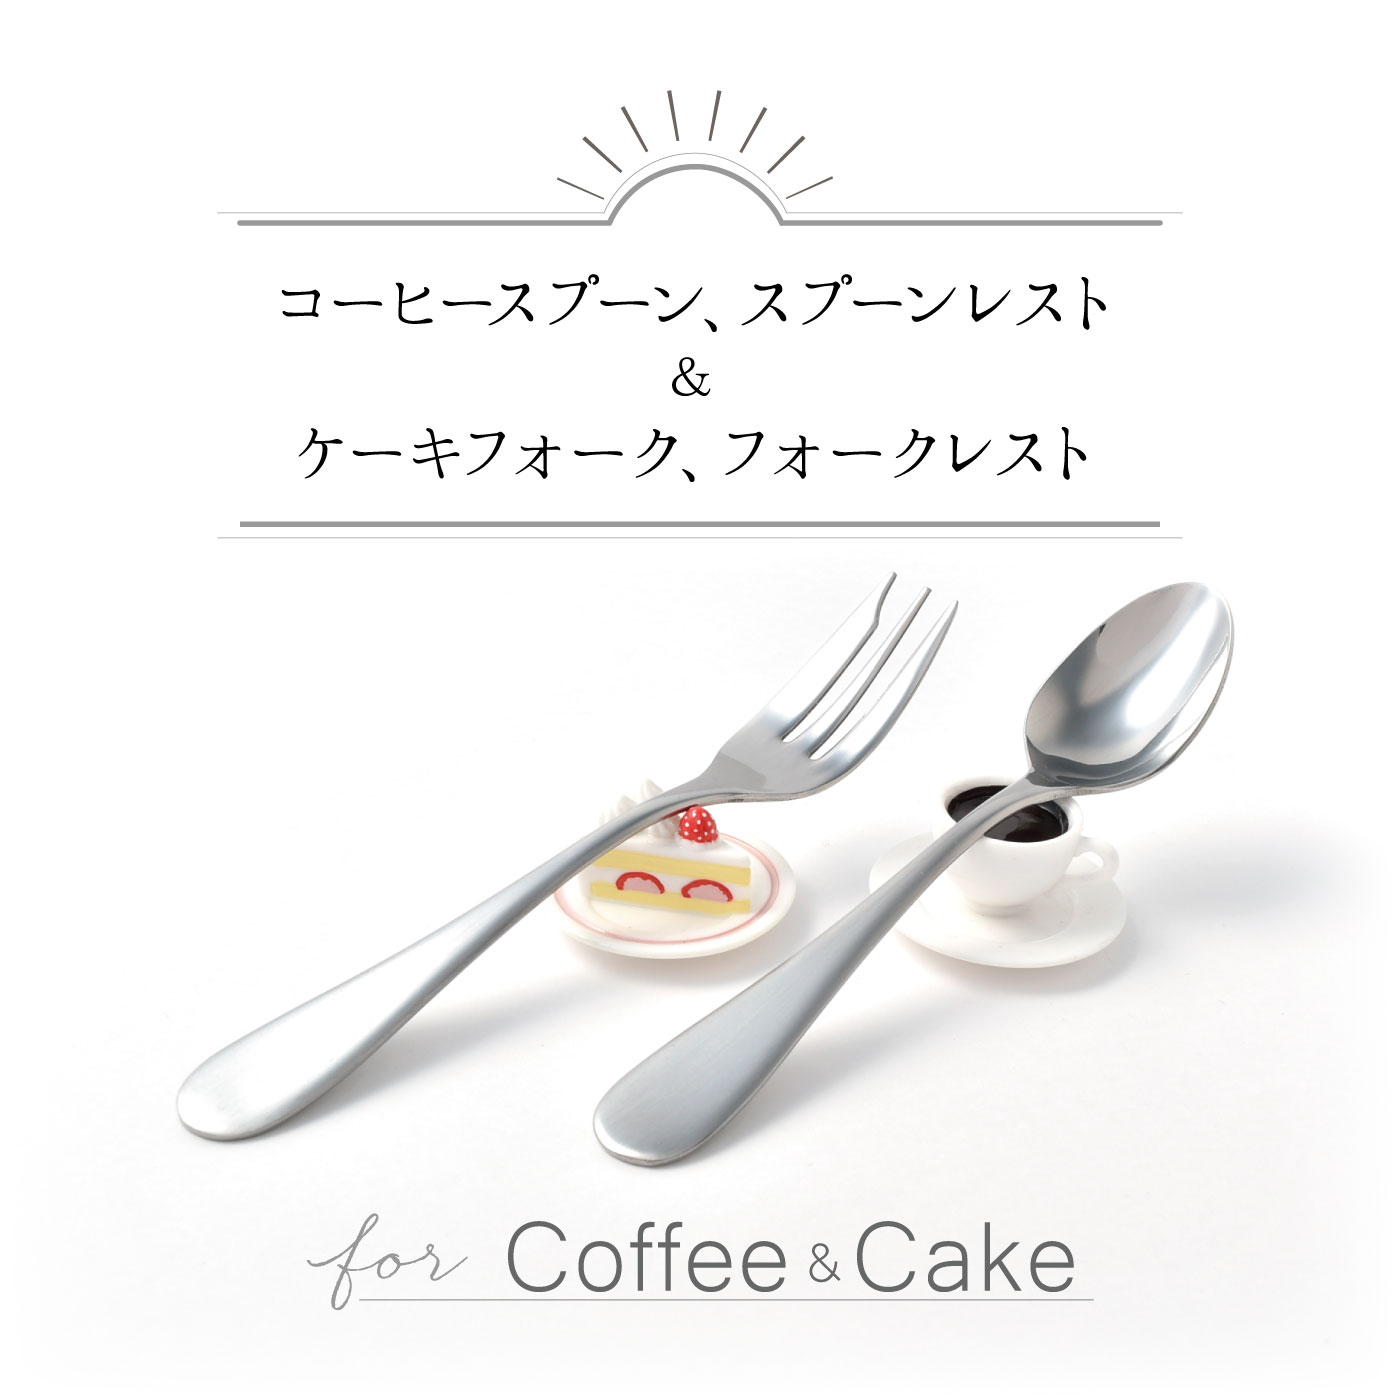 ミニチュアレストが可愛すぎ コーヒースプーン ケーキ フォーク レストセット カトラリー 食器類 キッチン雑貨 バイヤーセレクトの通販 フェリシモパートナーズ